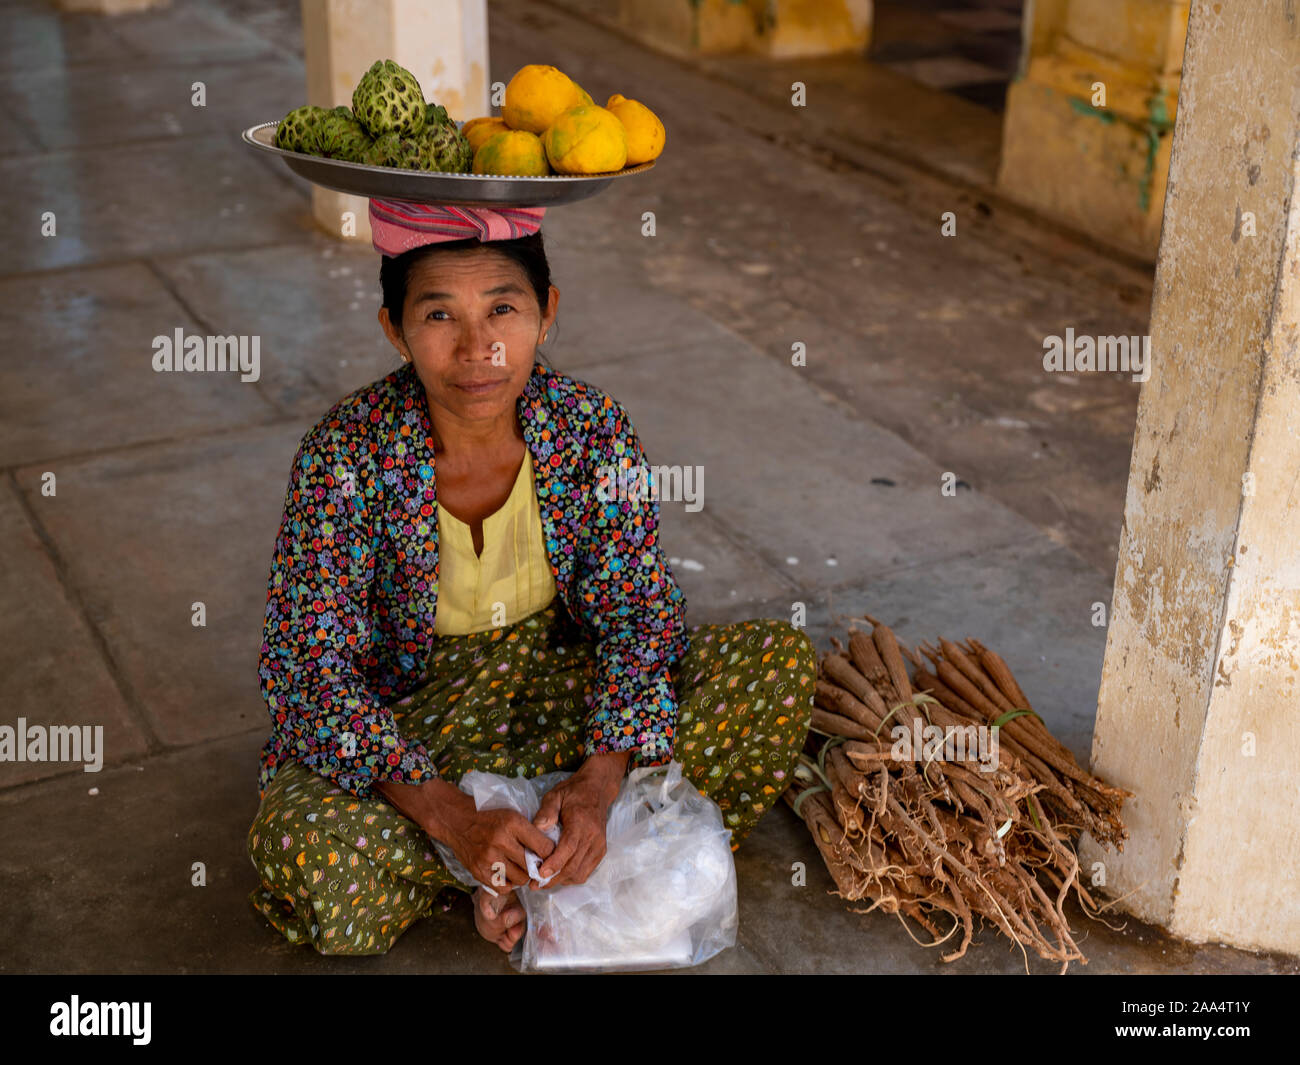 Burmesischen Frau verkaufen vanillepudding Äpfel und Apfelsinen, die Sie Guthaben auf einem Tablett auf dem Kopf in einem Tempel von Bagan, Myanmar (Birma) Stockfoto